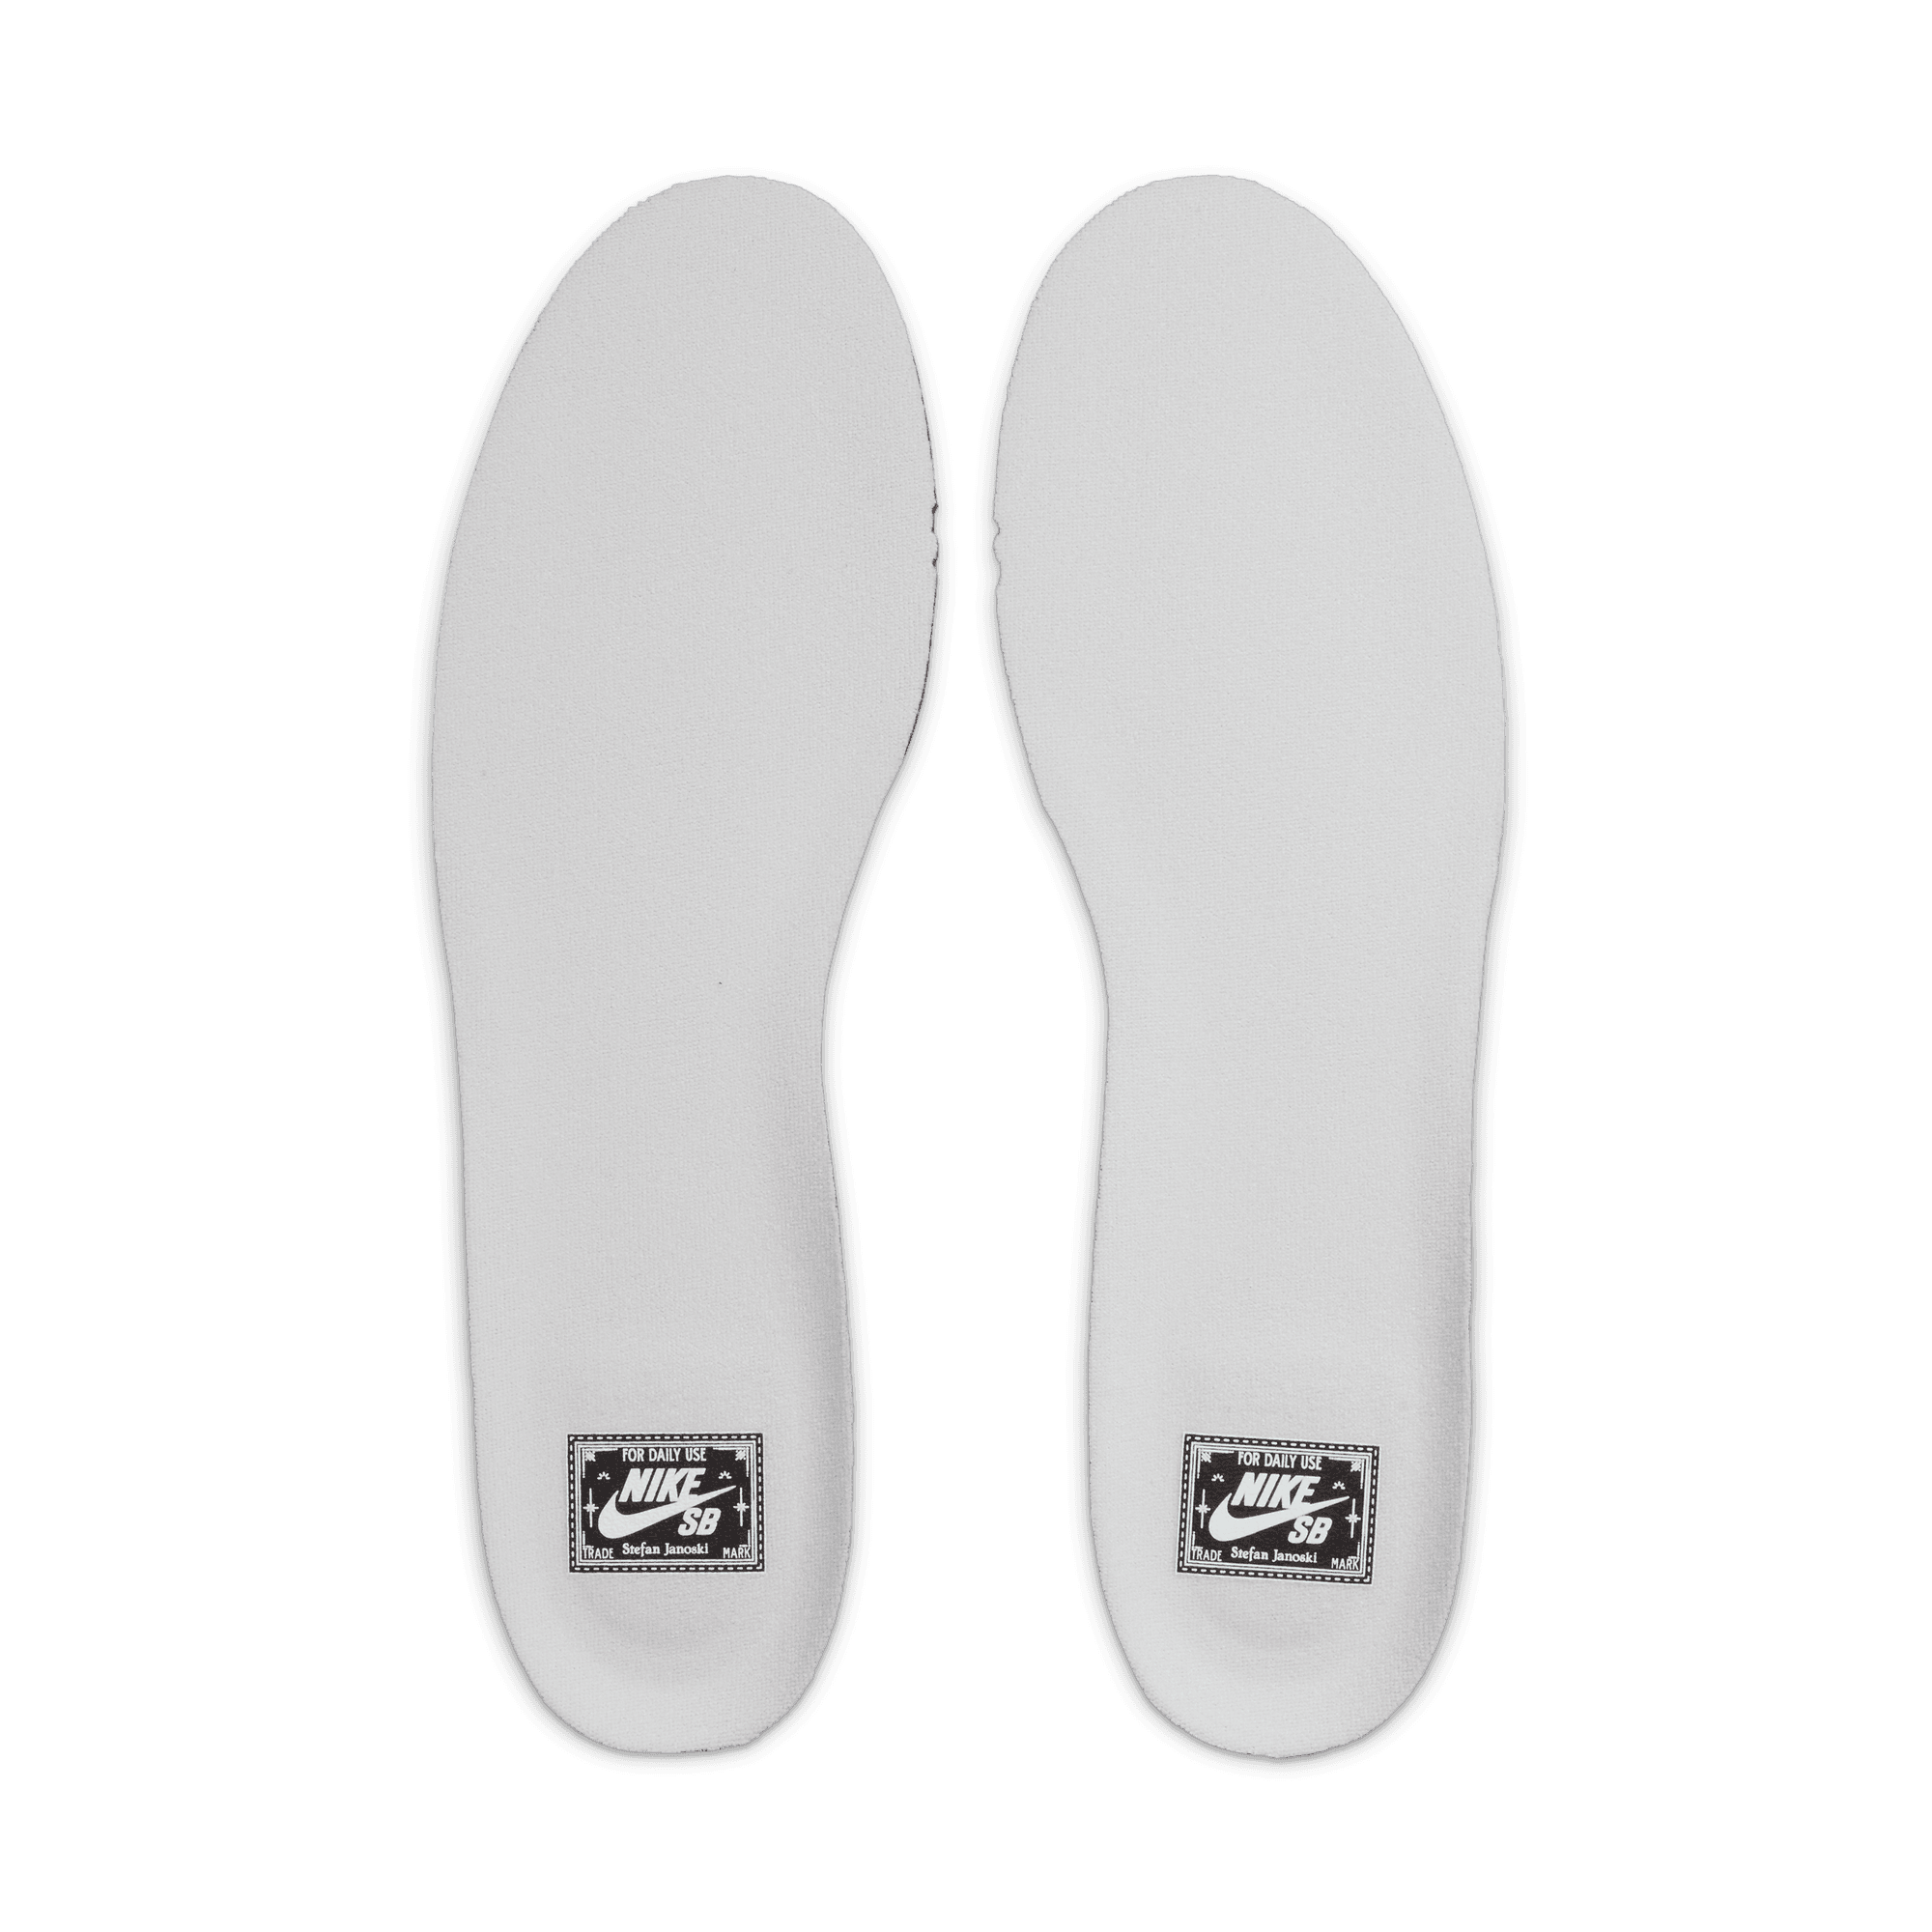 Summit White OG+ Nike SB Janoski Skate Shoe Insoles